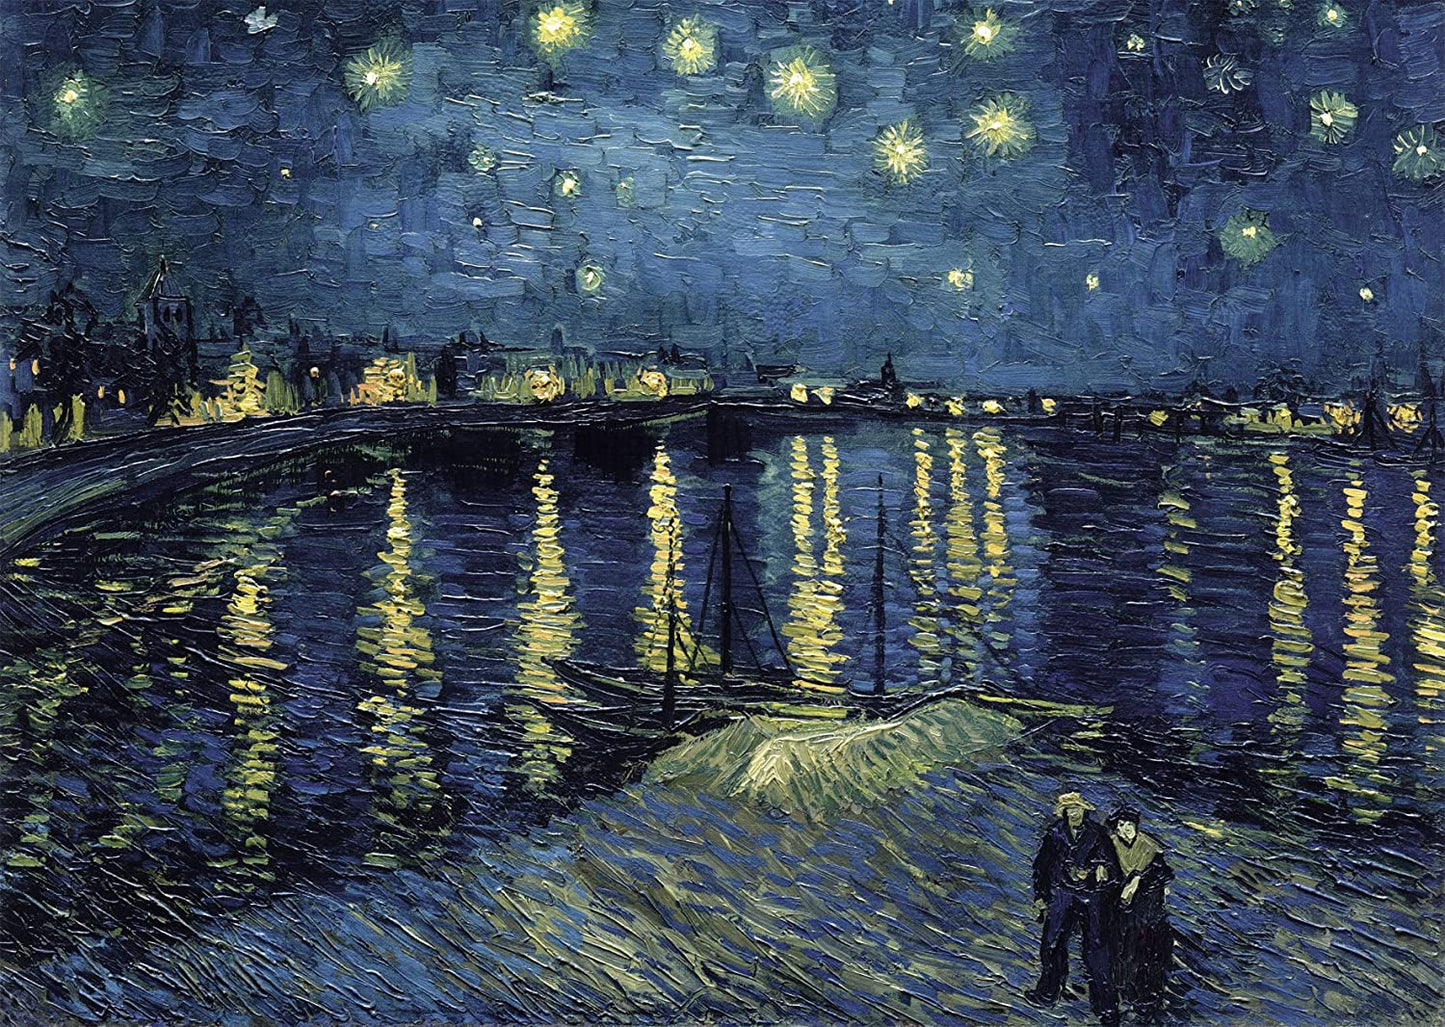 Puzzle La notte stellata sul Rodano - Van Gogh Ravensburger